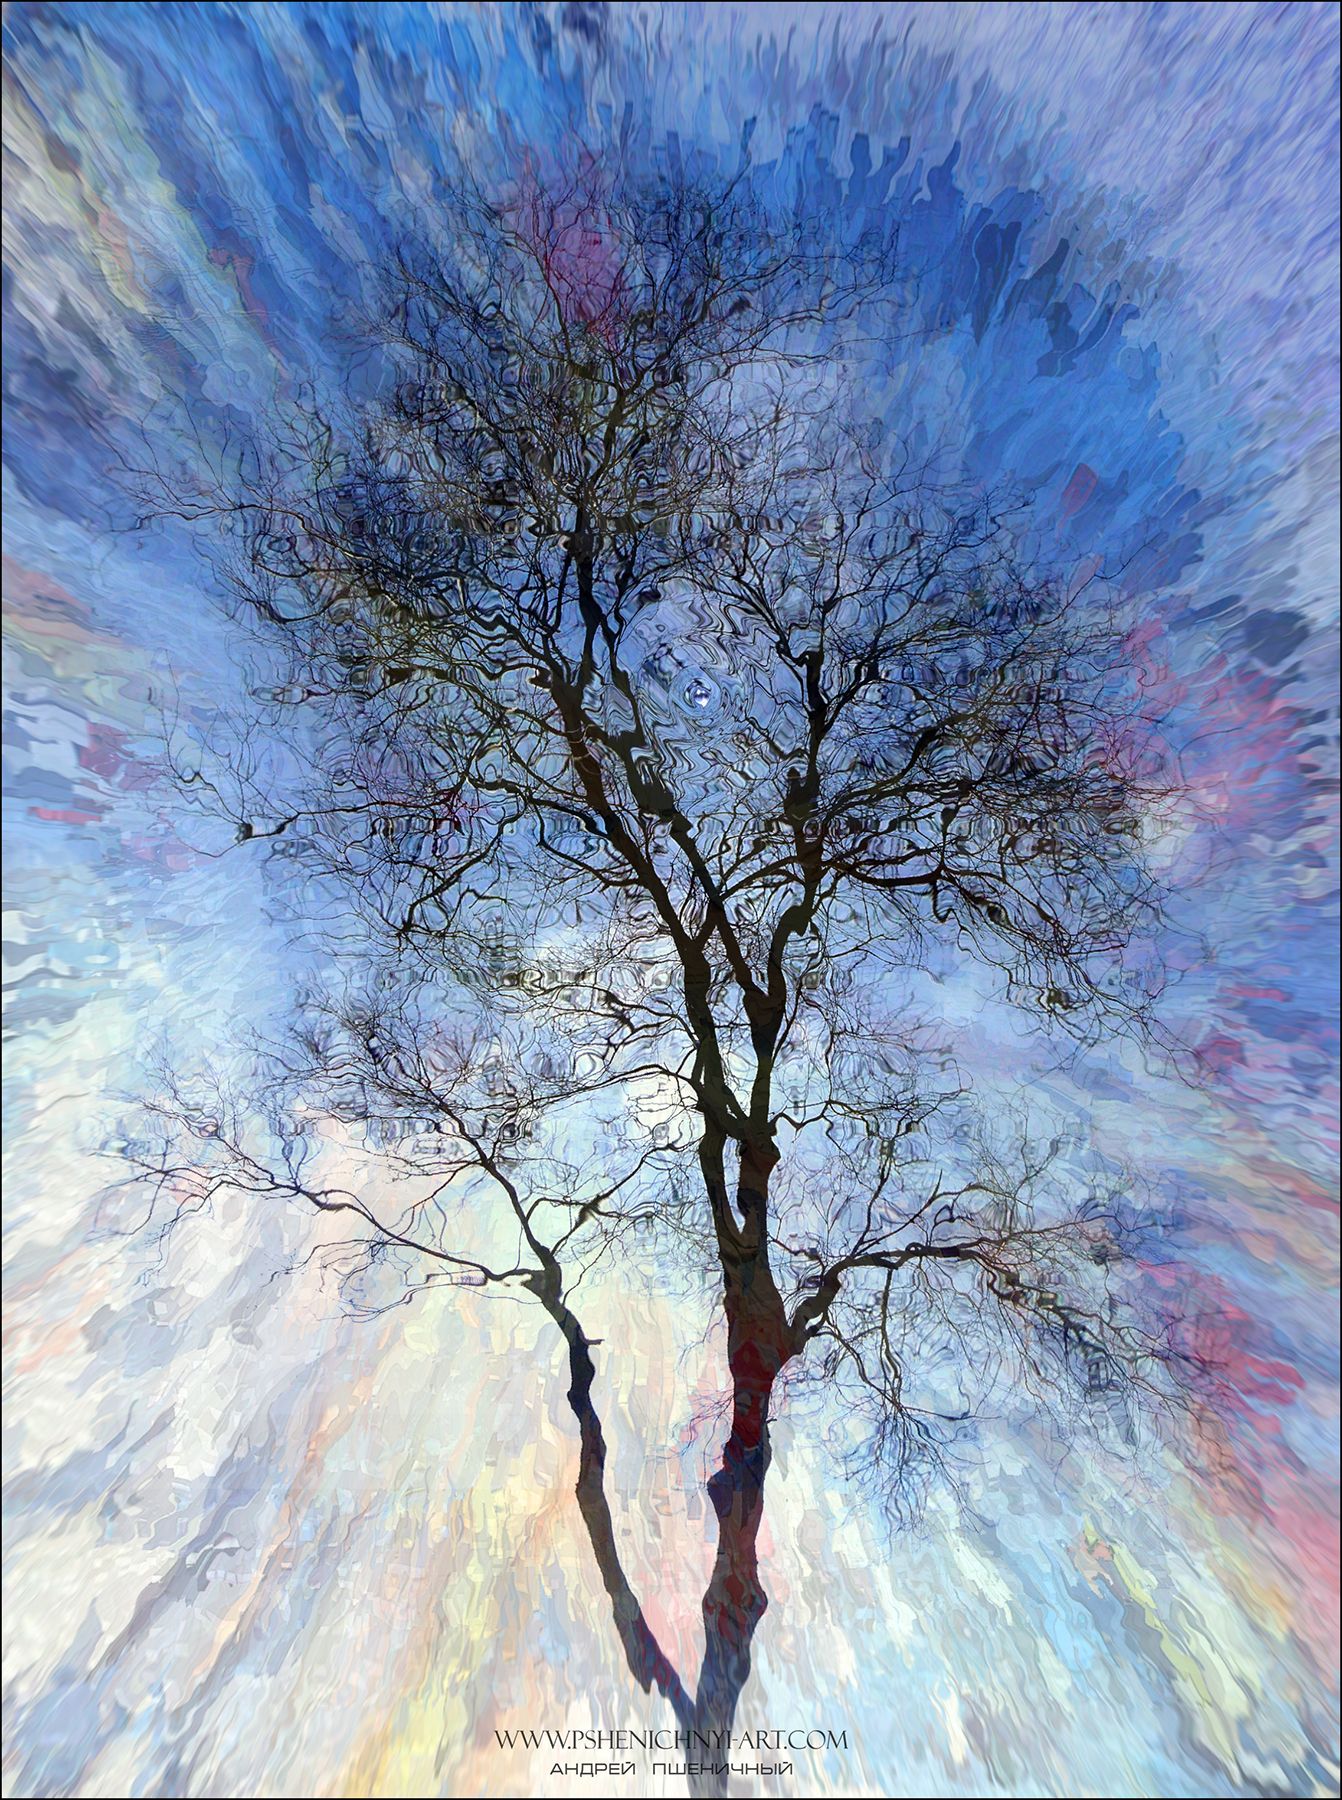 дерево, абстракция, концепция, весна, небо, эйфория, атмосфера, настроение, Пшеничный Андрей